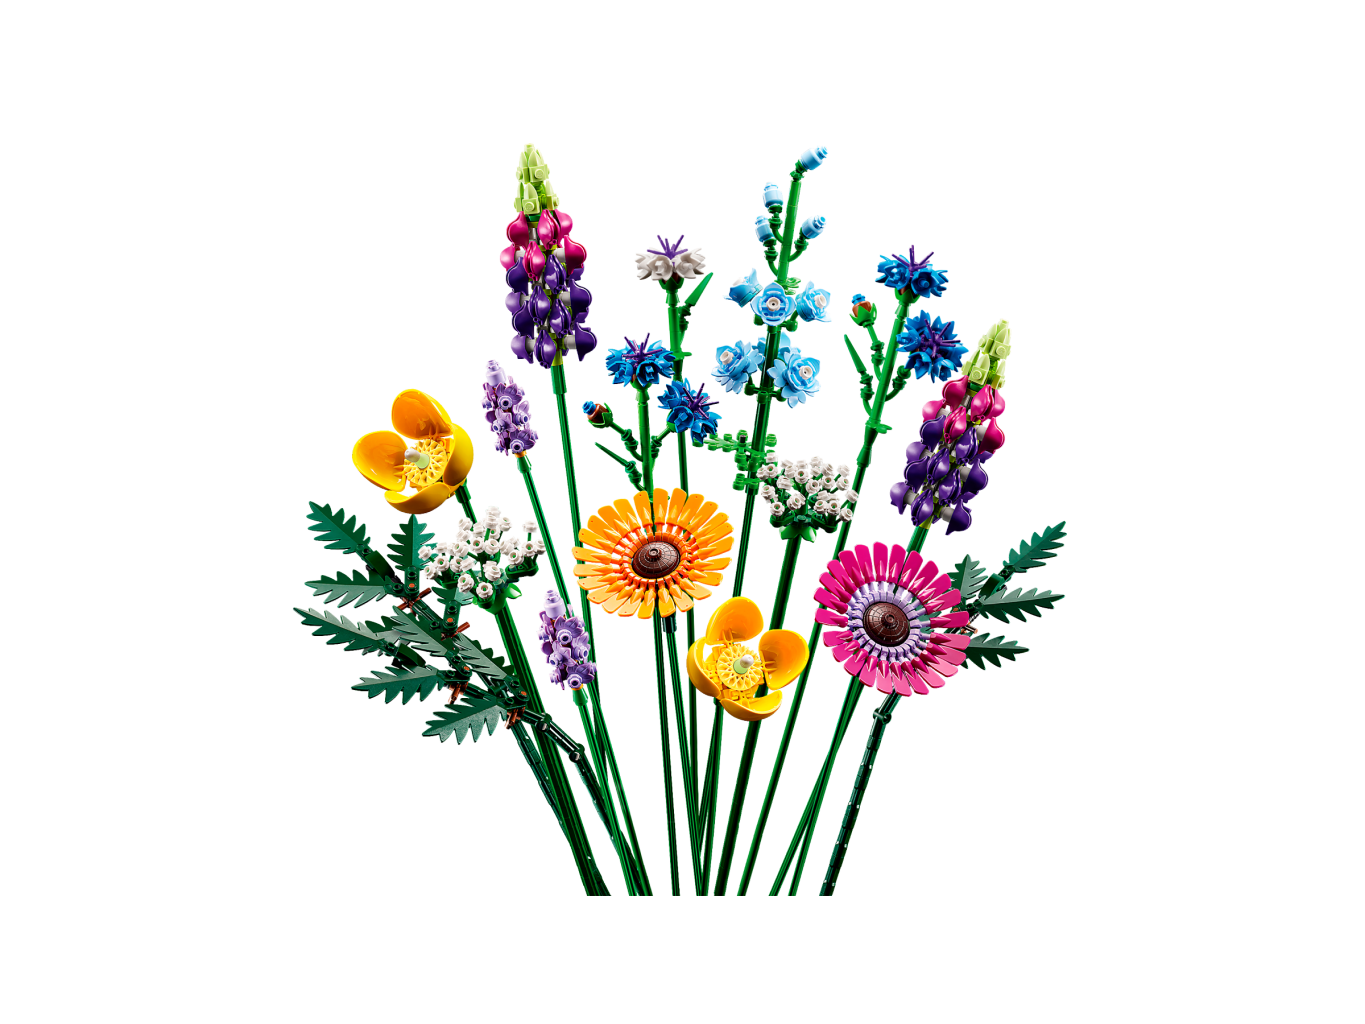 Lego - Bouquet de fleurs sauvages - 10313 - Modèle construit de côté chaque fleurs séparés